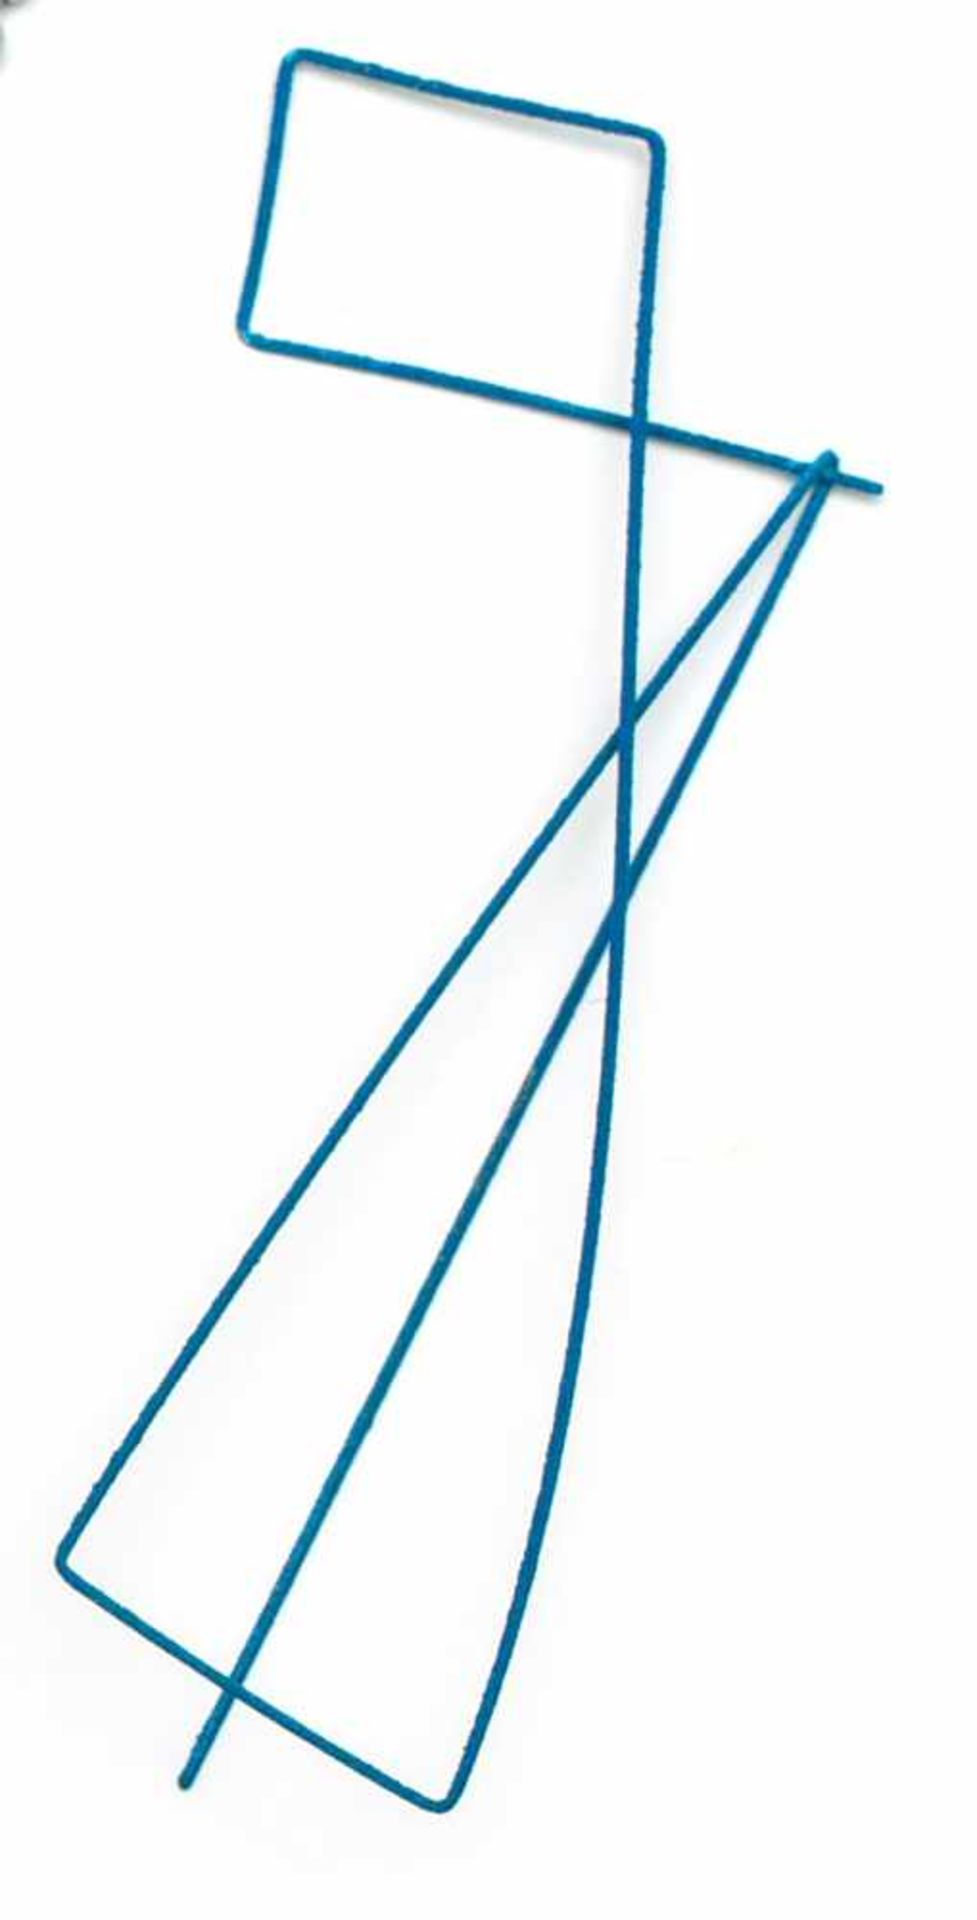 Marijke de Goey, blauwe lineaire brochegemaakt uit één zilveren draad, blauw gecoat, [1]150